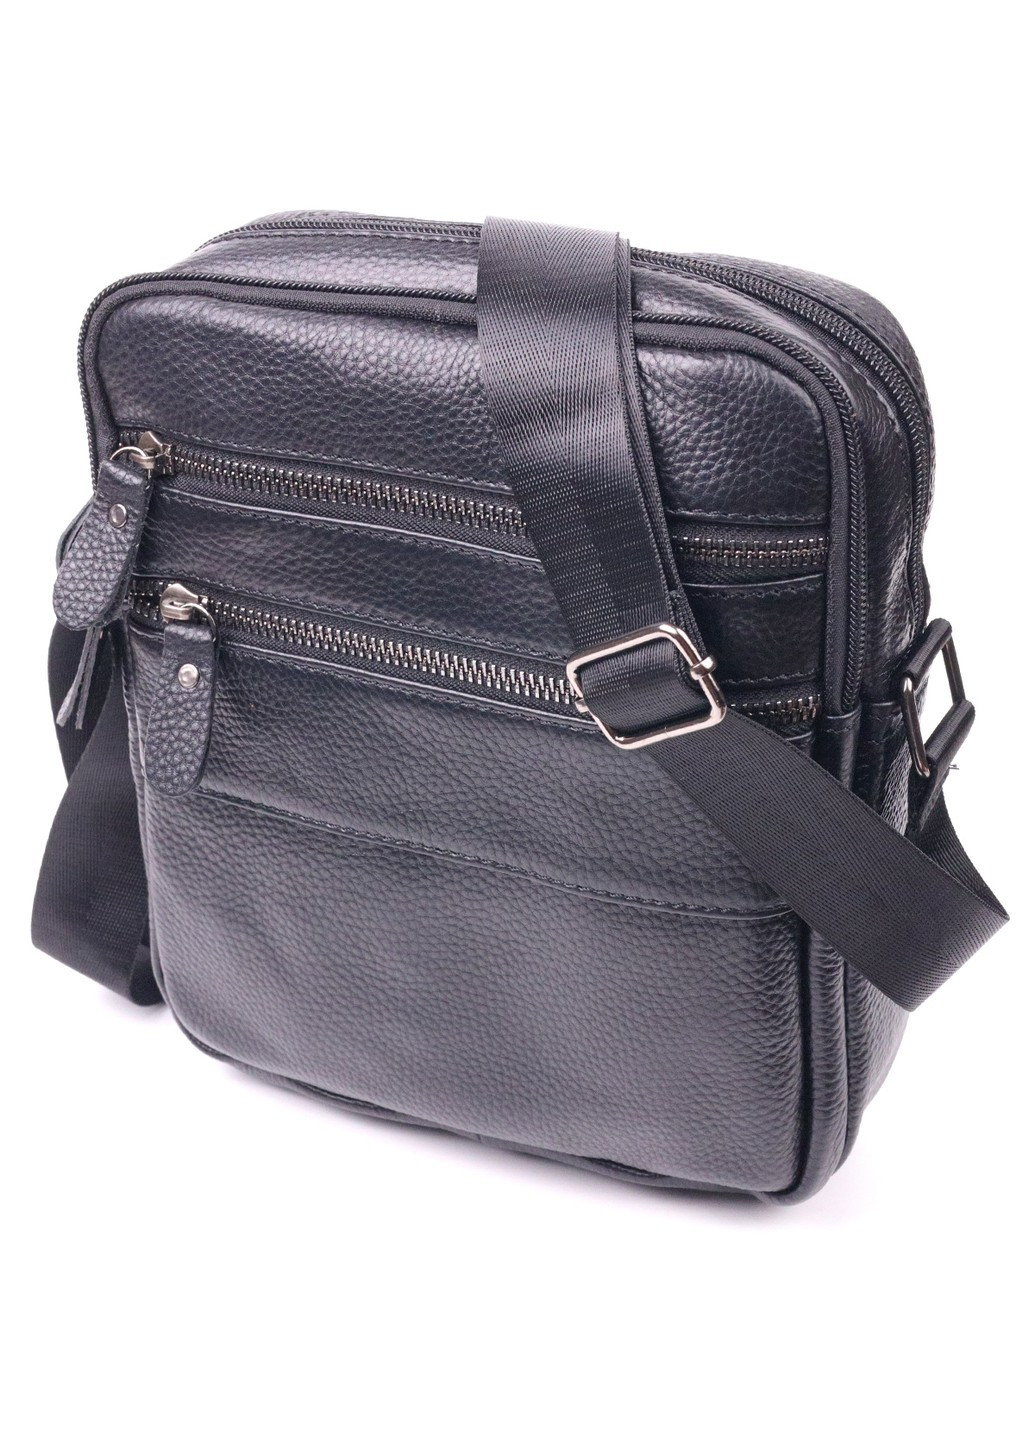 Стильная мужская сумка из натуральной зернистой кожи 21398 Черная Vintage (258267896)